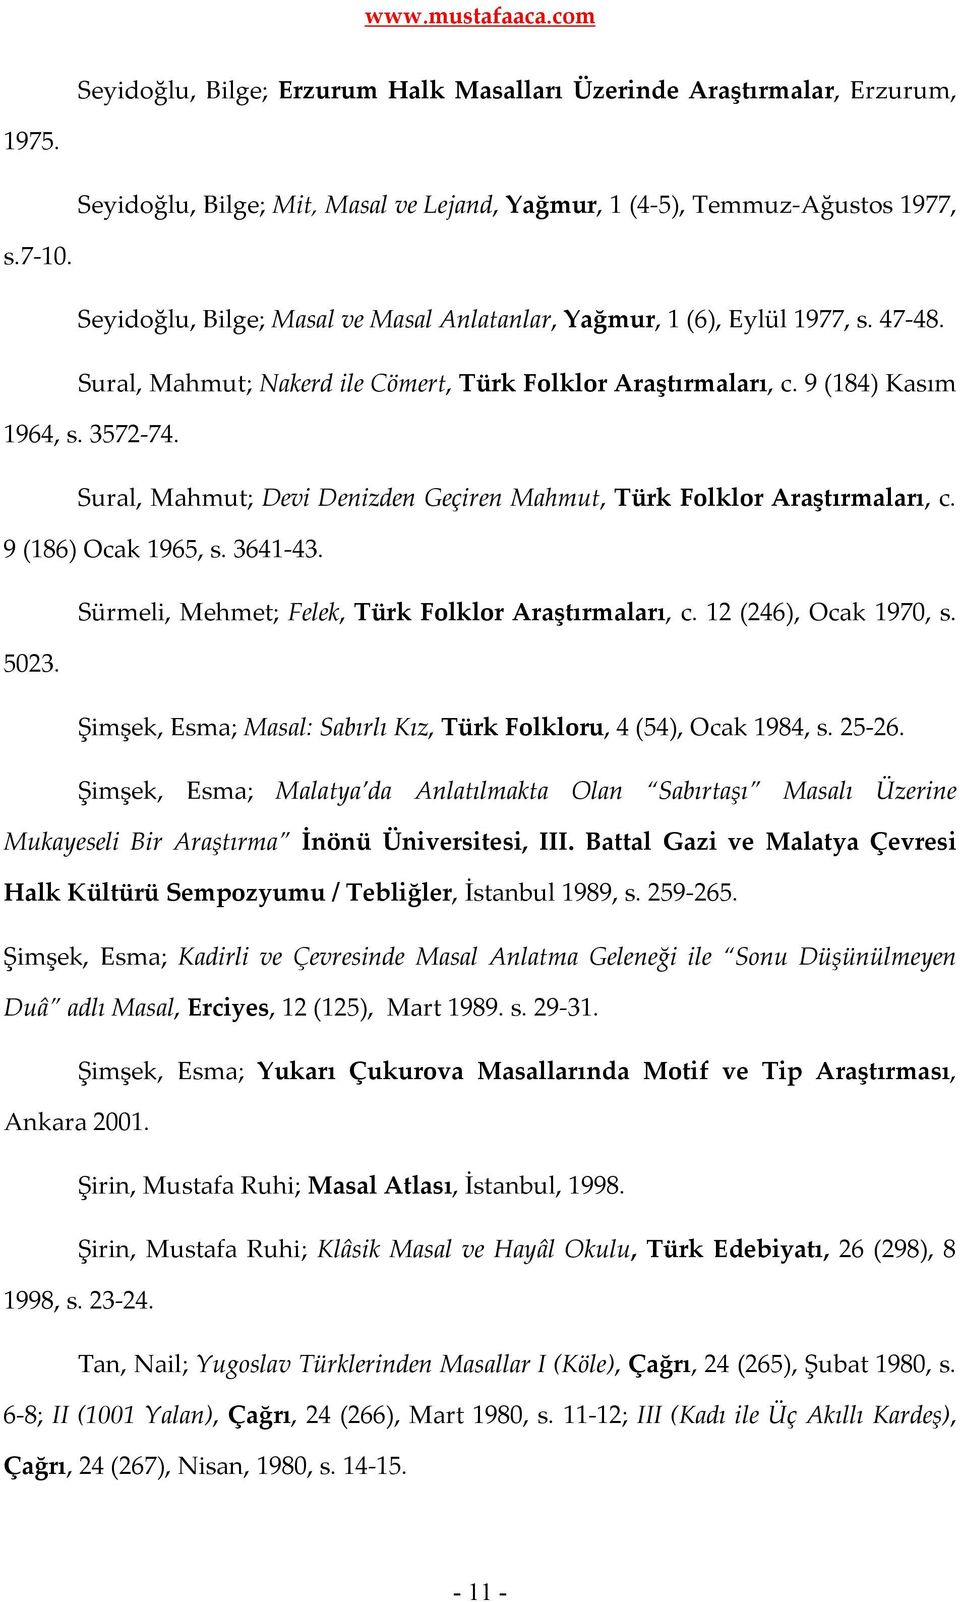 Sural, Mahmut; Devi Denizden Geçiren Mahmut, Türk Folklor Araştırmaları, c. 9 (186) Ocak 1965, s. 3641-43. Sürmeli, Mehmet; Felek, Türk Folklor Araştırmaları, c. 12 (246), Ocak 1970, s. 5023.